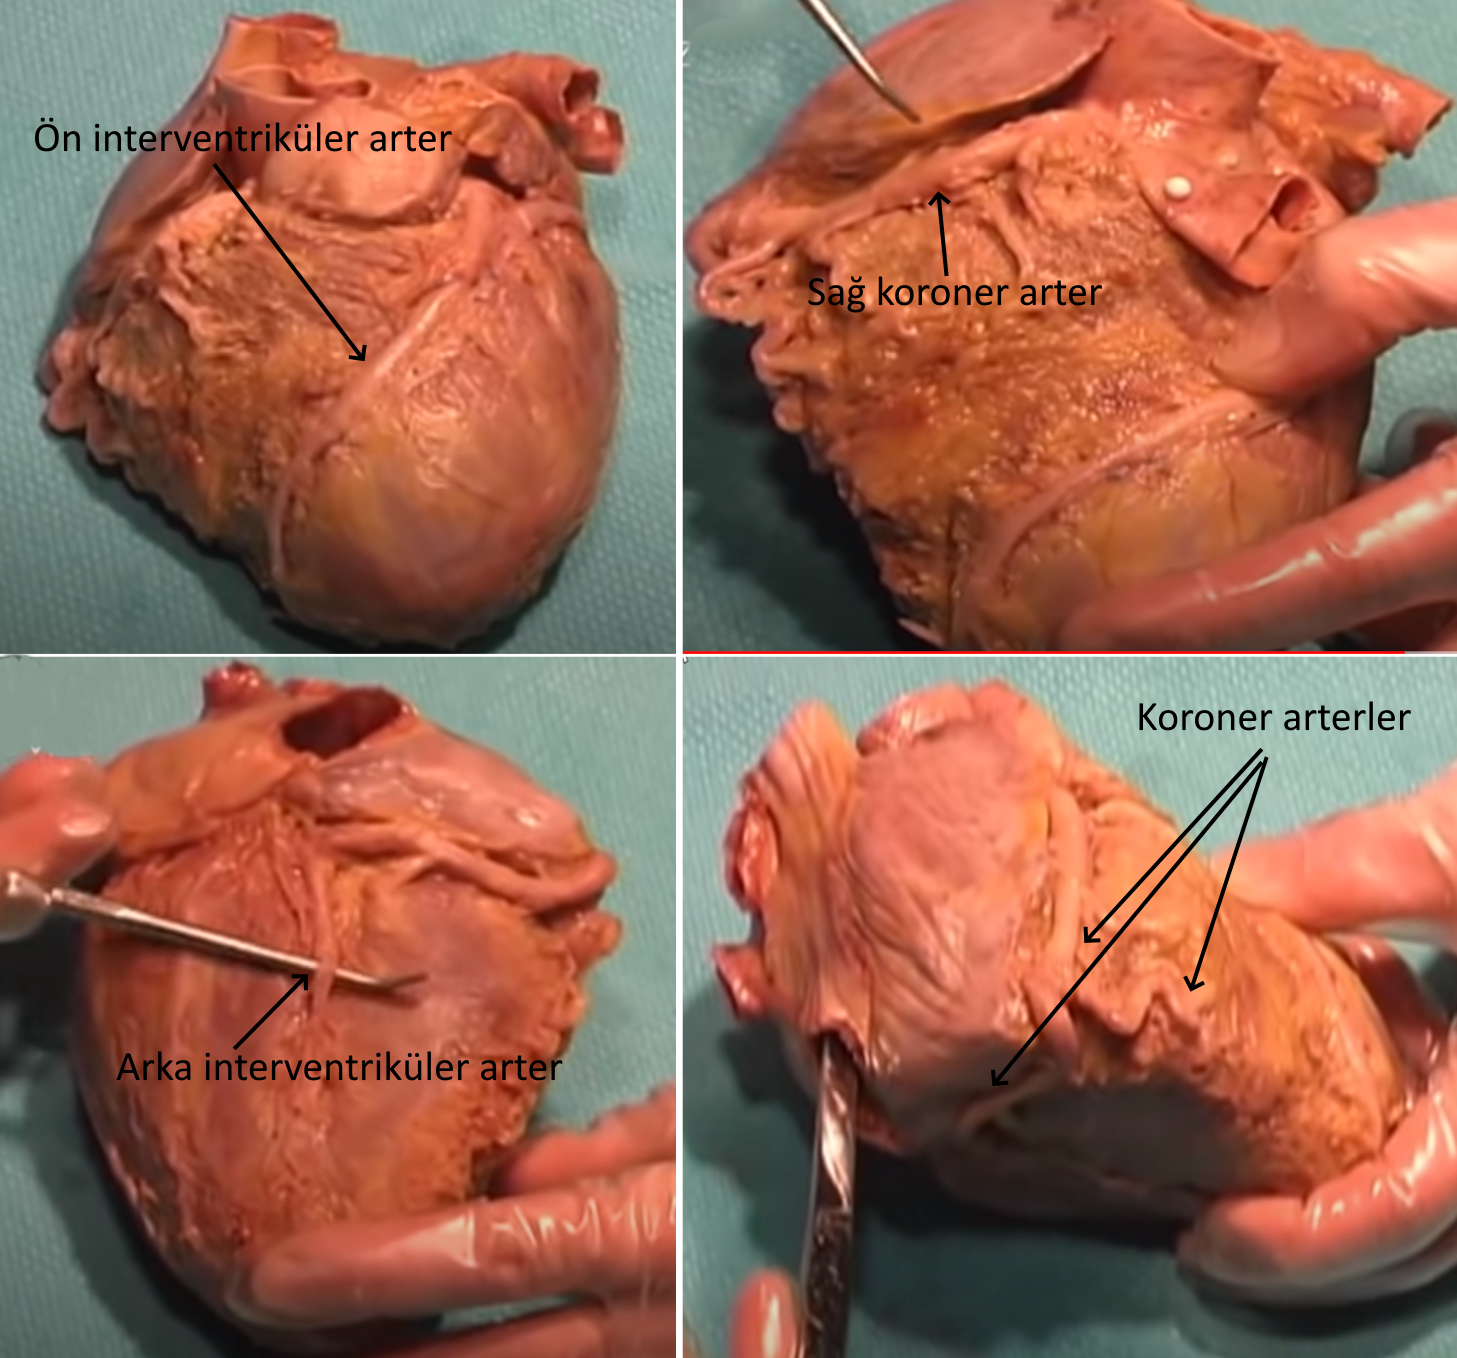 kalplerin uzerinin paslanmasi koroner arter hastaligi kalplerin sertlesmesi gercek insan kalbi